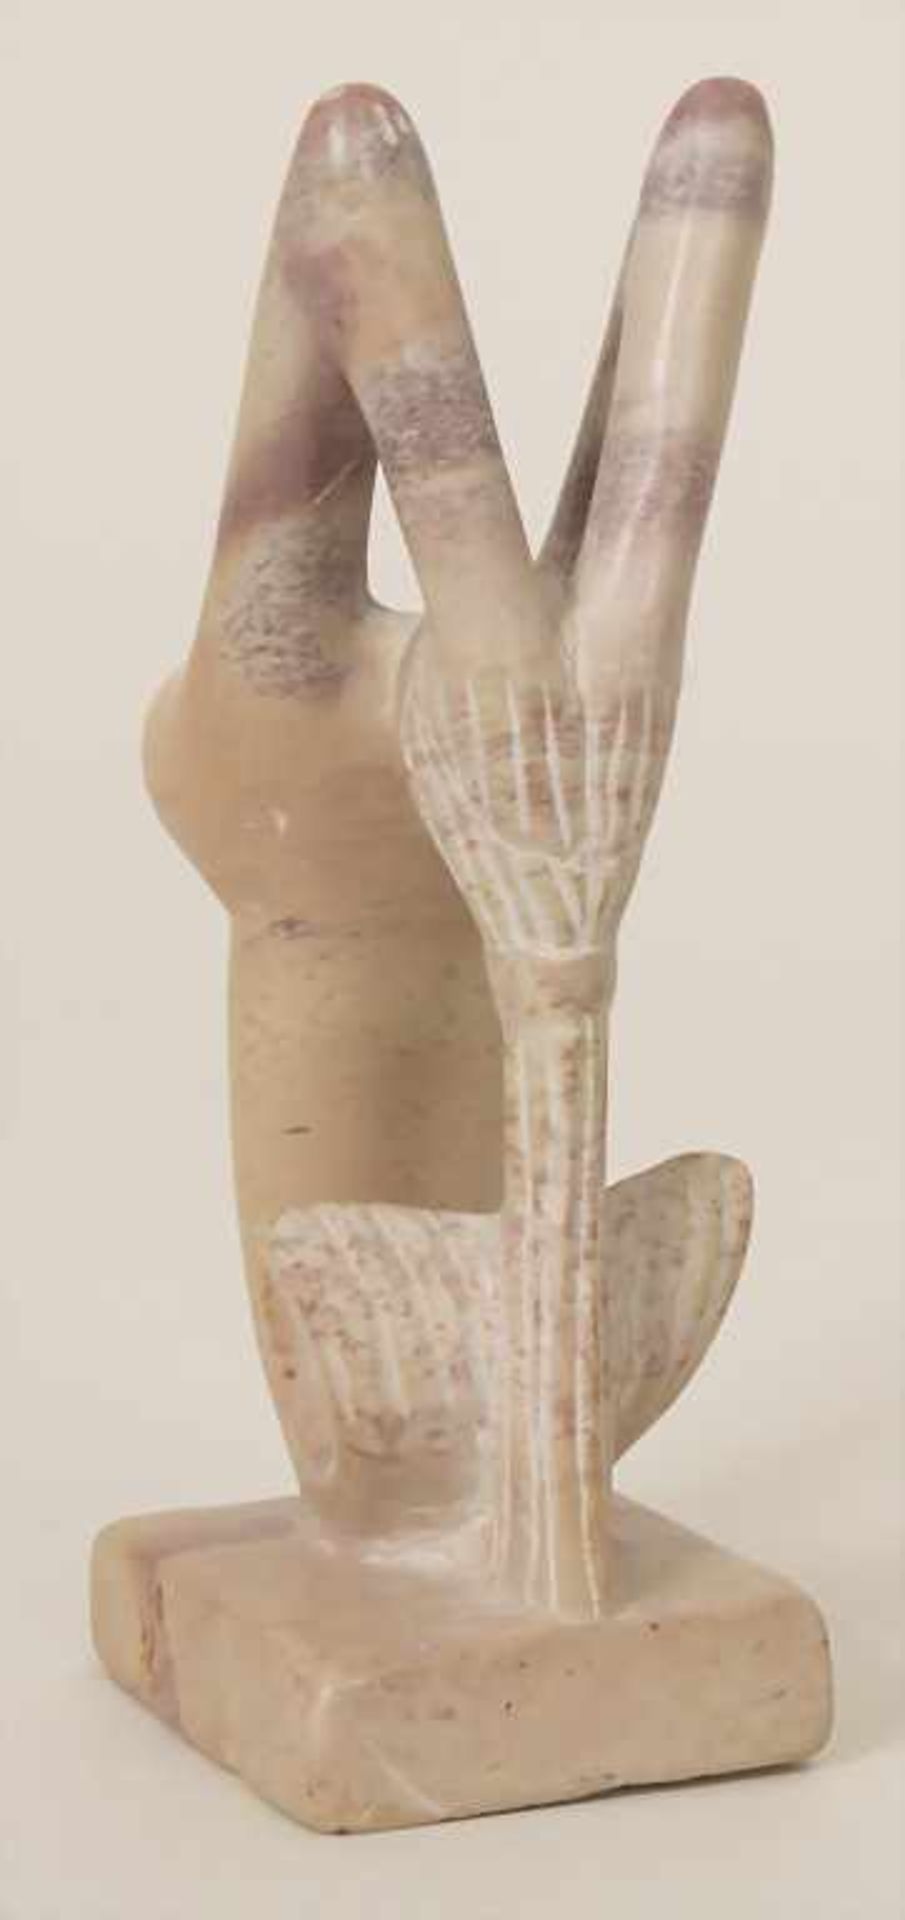 Speckstein-Skulptur 'Nixe' / Soapstone Sculpture 'Mermaid'Material: Speckstein,Höhe: 15,1 cm, - Bild 2 aus 5